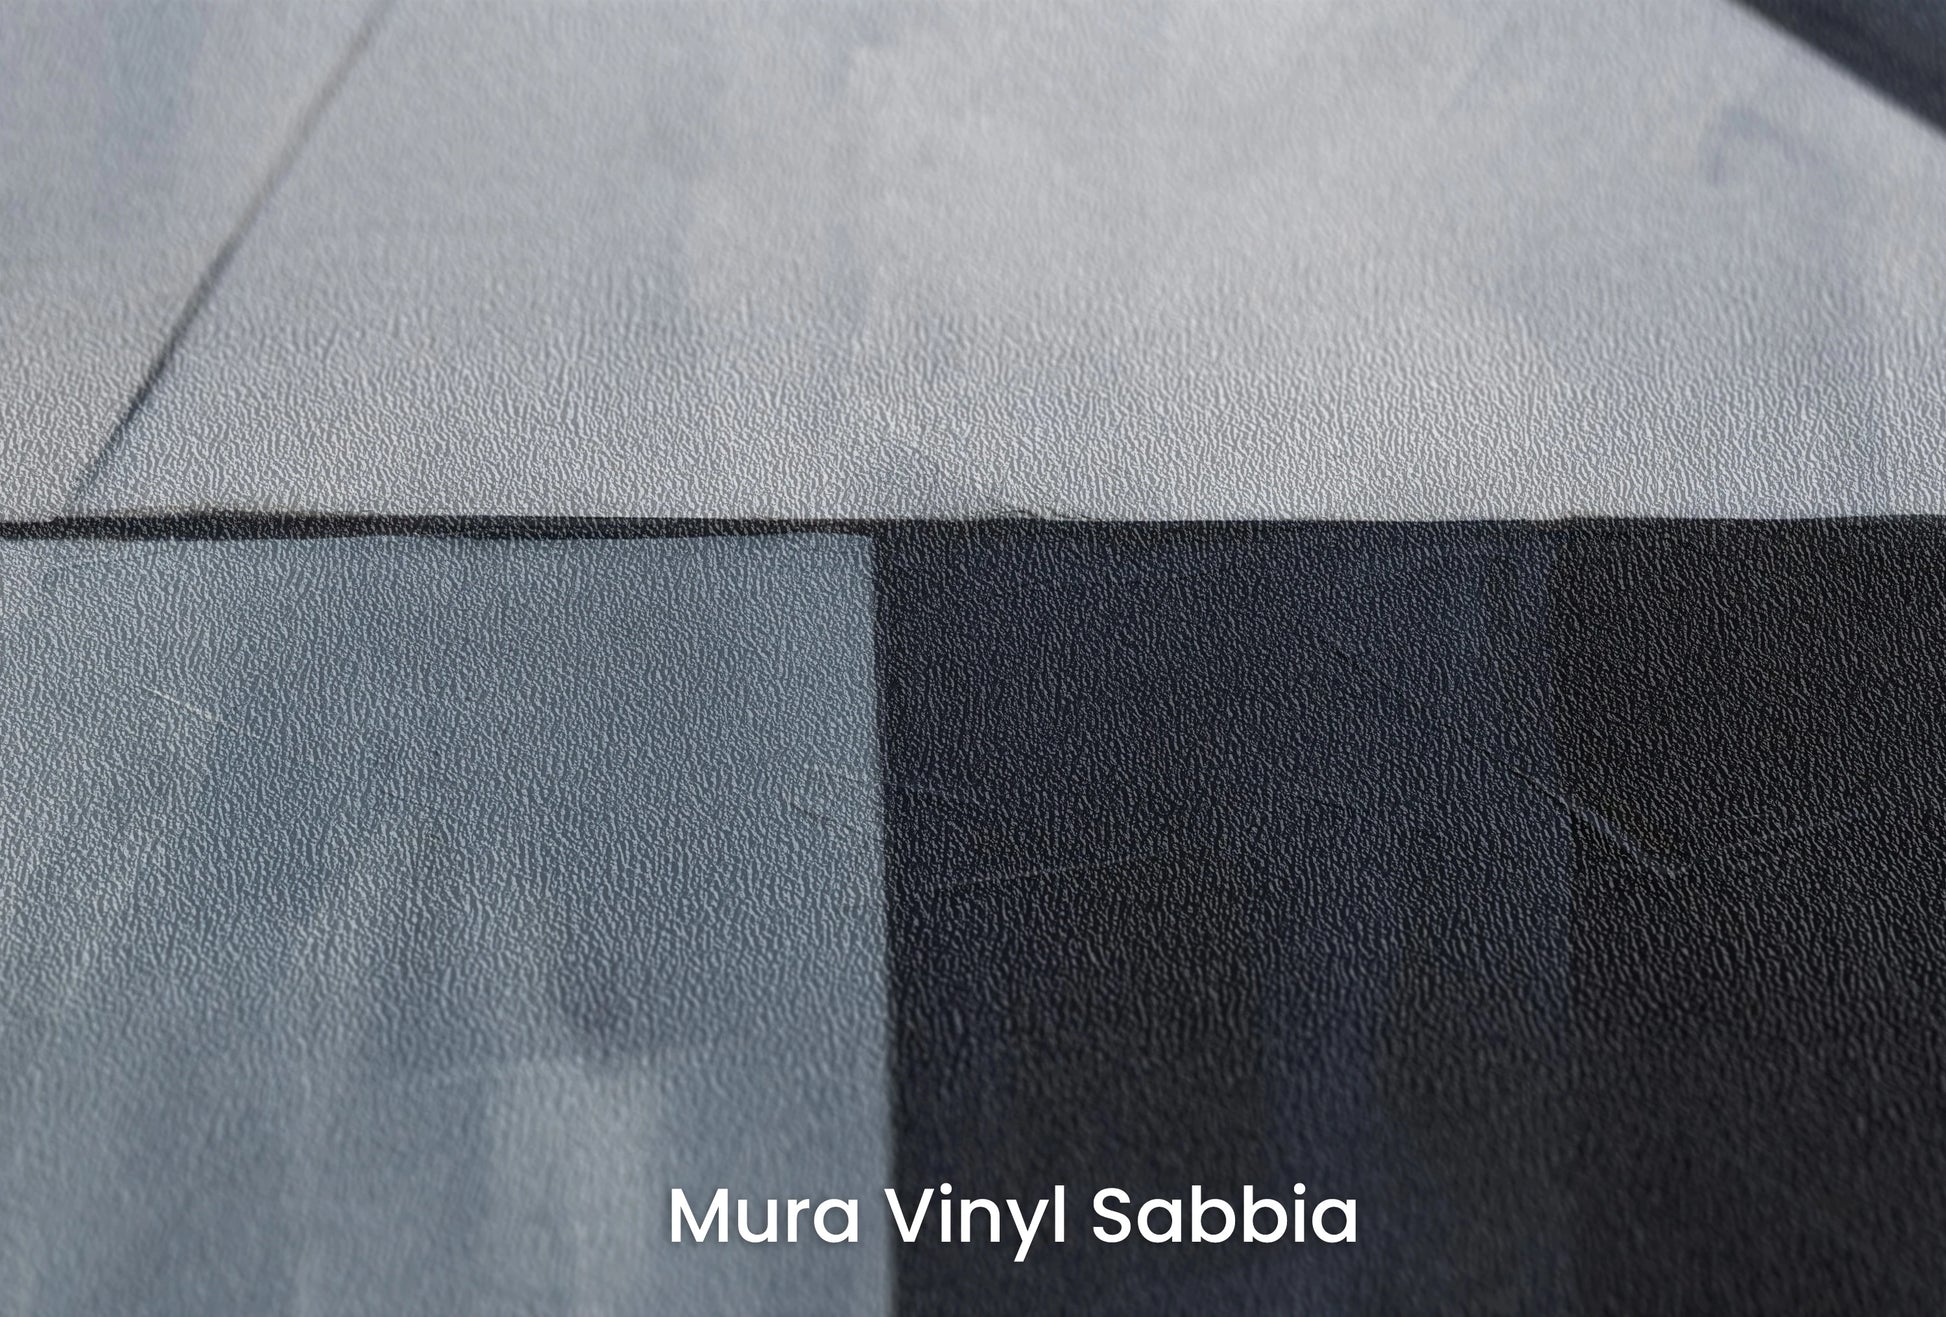 Zbliżenie na artystyczną fototapetę o nazwie Sharp Edges na podłożu Mura Vinyl Sabbia struktura grubego ziarna piasku.